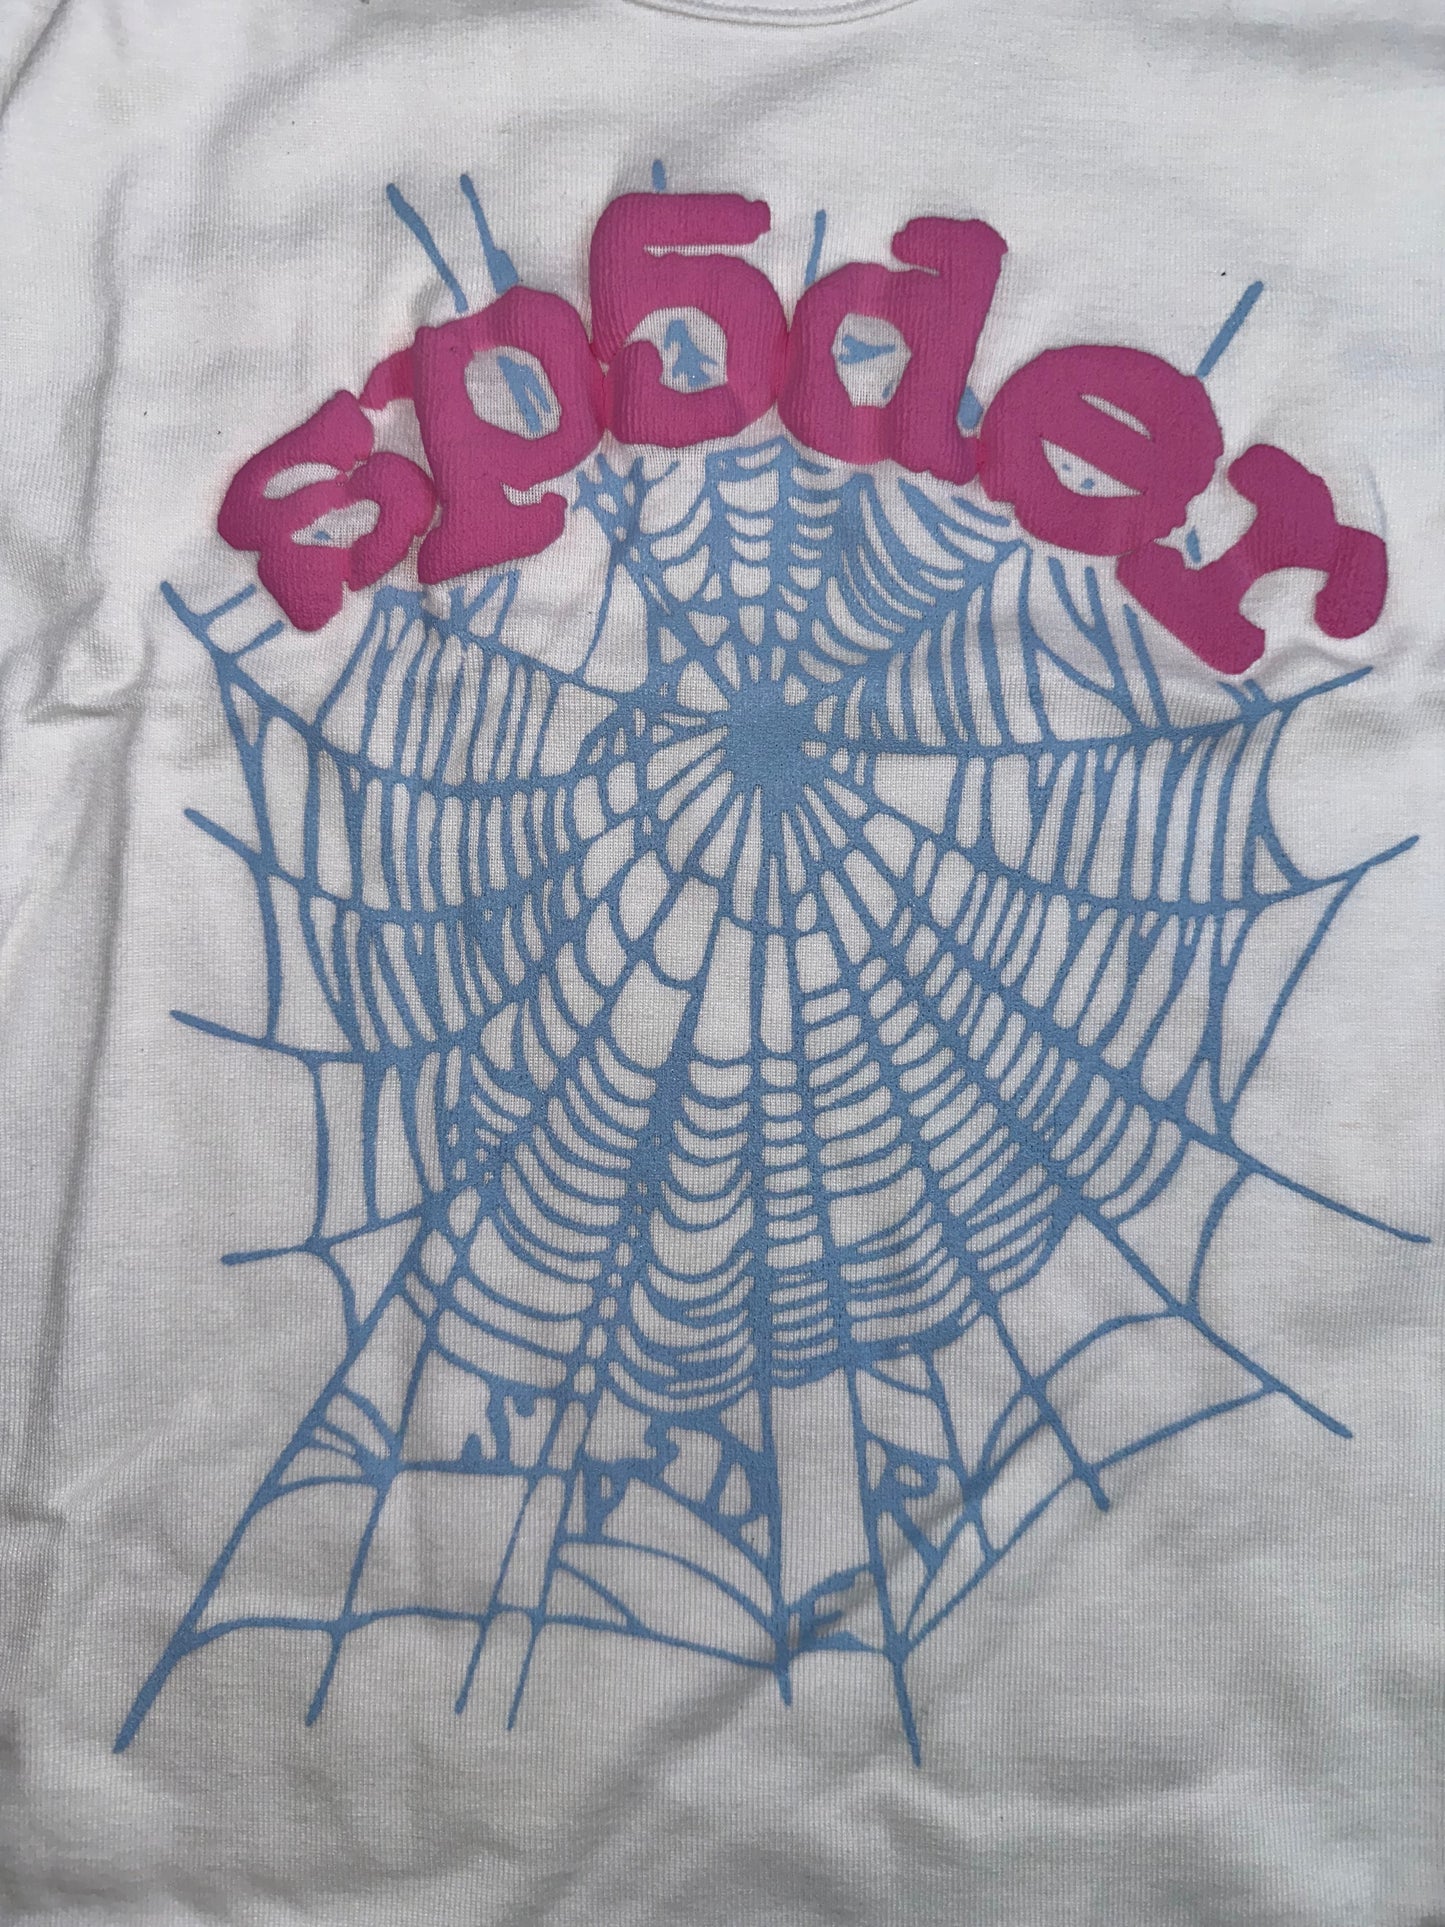 Sp5der OG Web Baby T-shirt